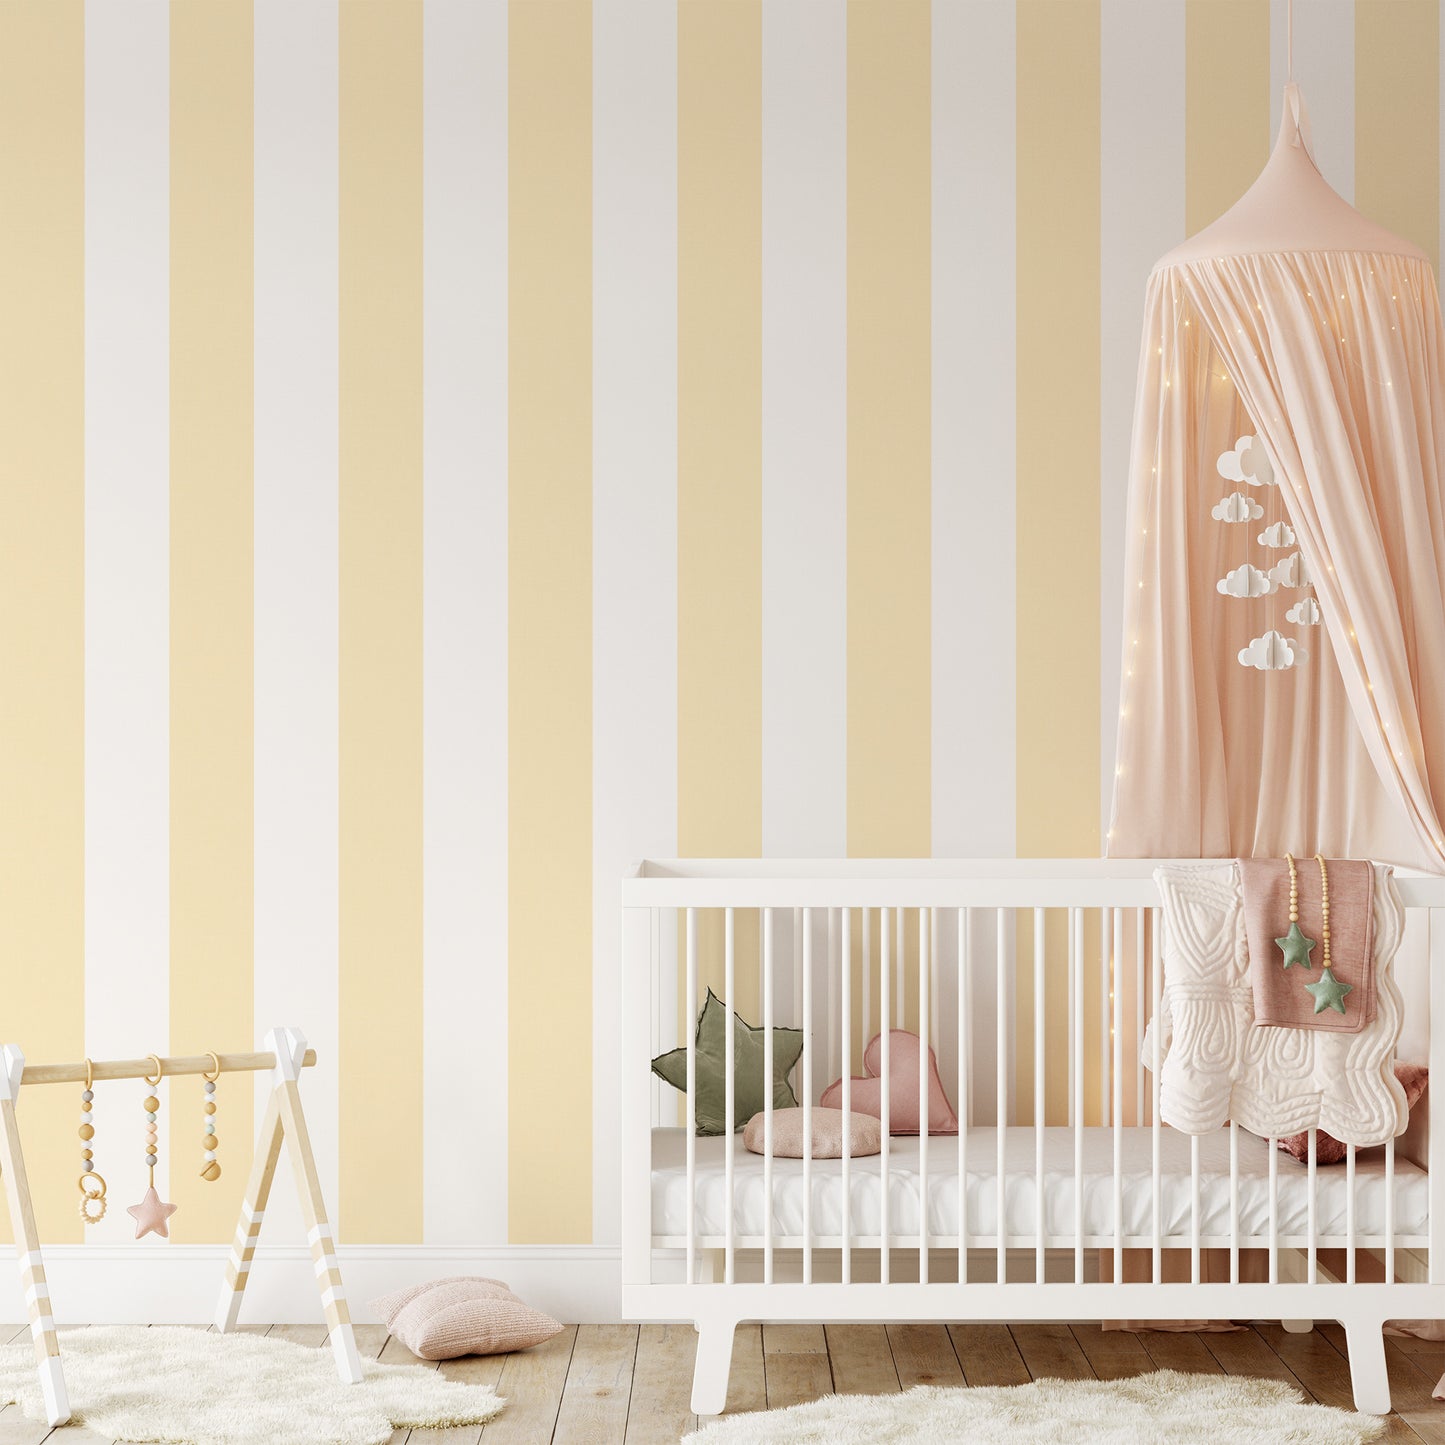 Nursery wallpaper featuring Gracie's Stripe Wallpaper- a classic stripe pattern